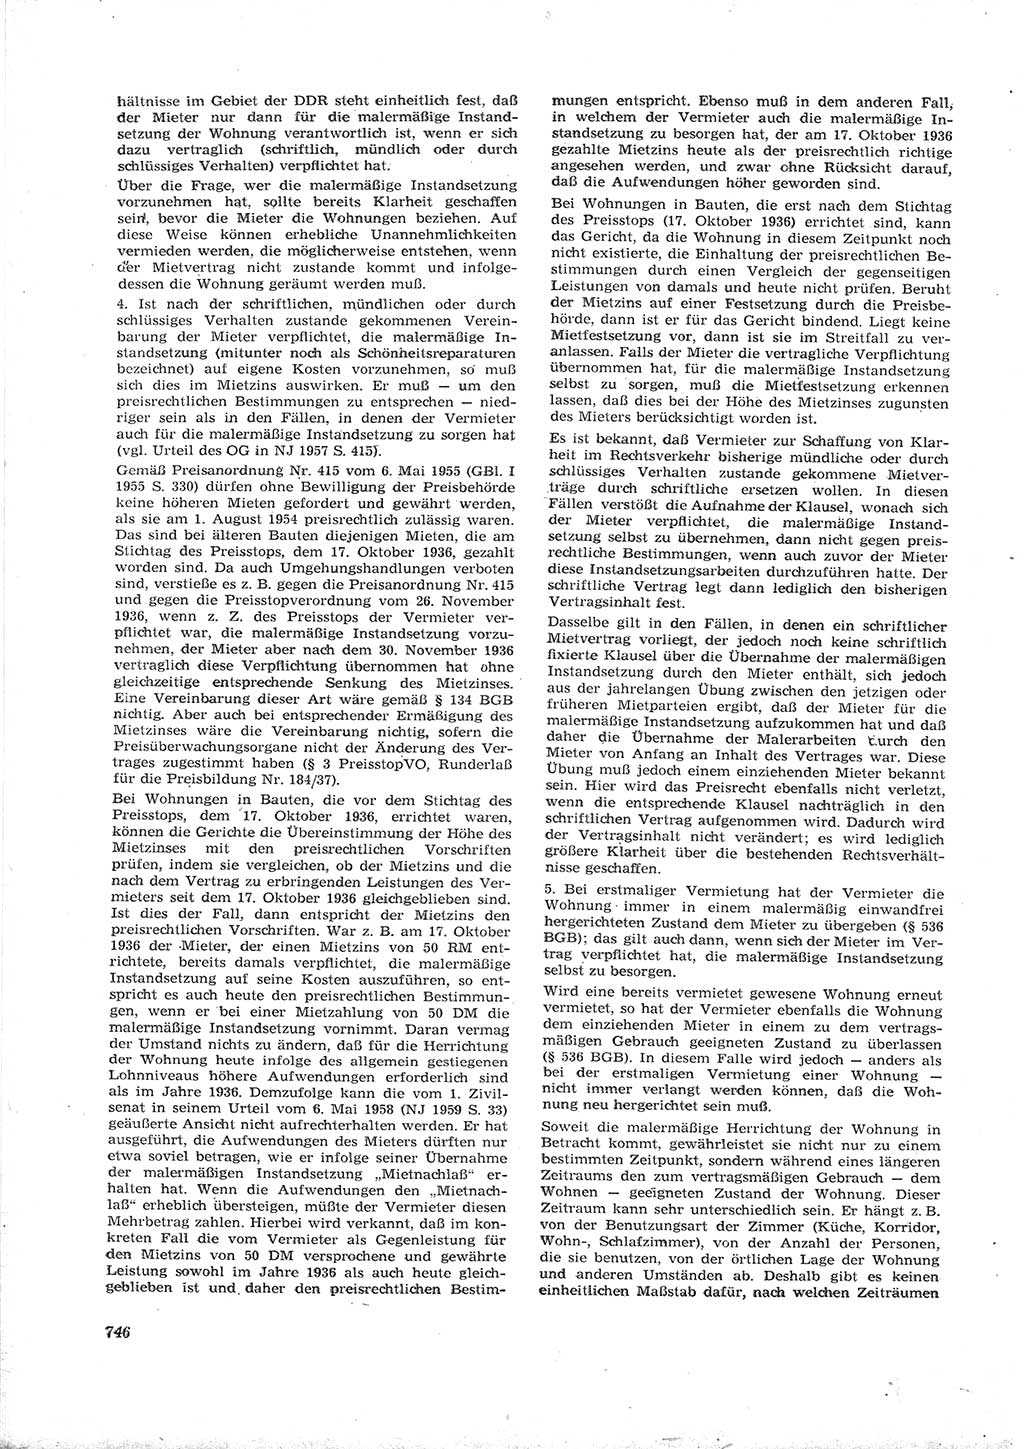 Neue Justiz (NJ), Zeitschrift für Recht und Rechtswissenschaft [Deutsche Demokratische Republik (DDR)], 16. Jahrgang 1962, Seite 746 (NJ DDR 1962, S. 746)